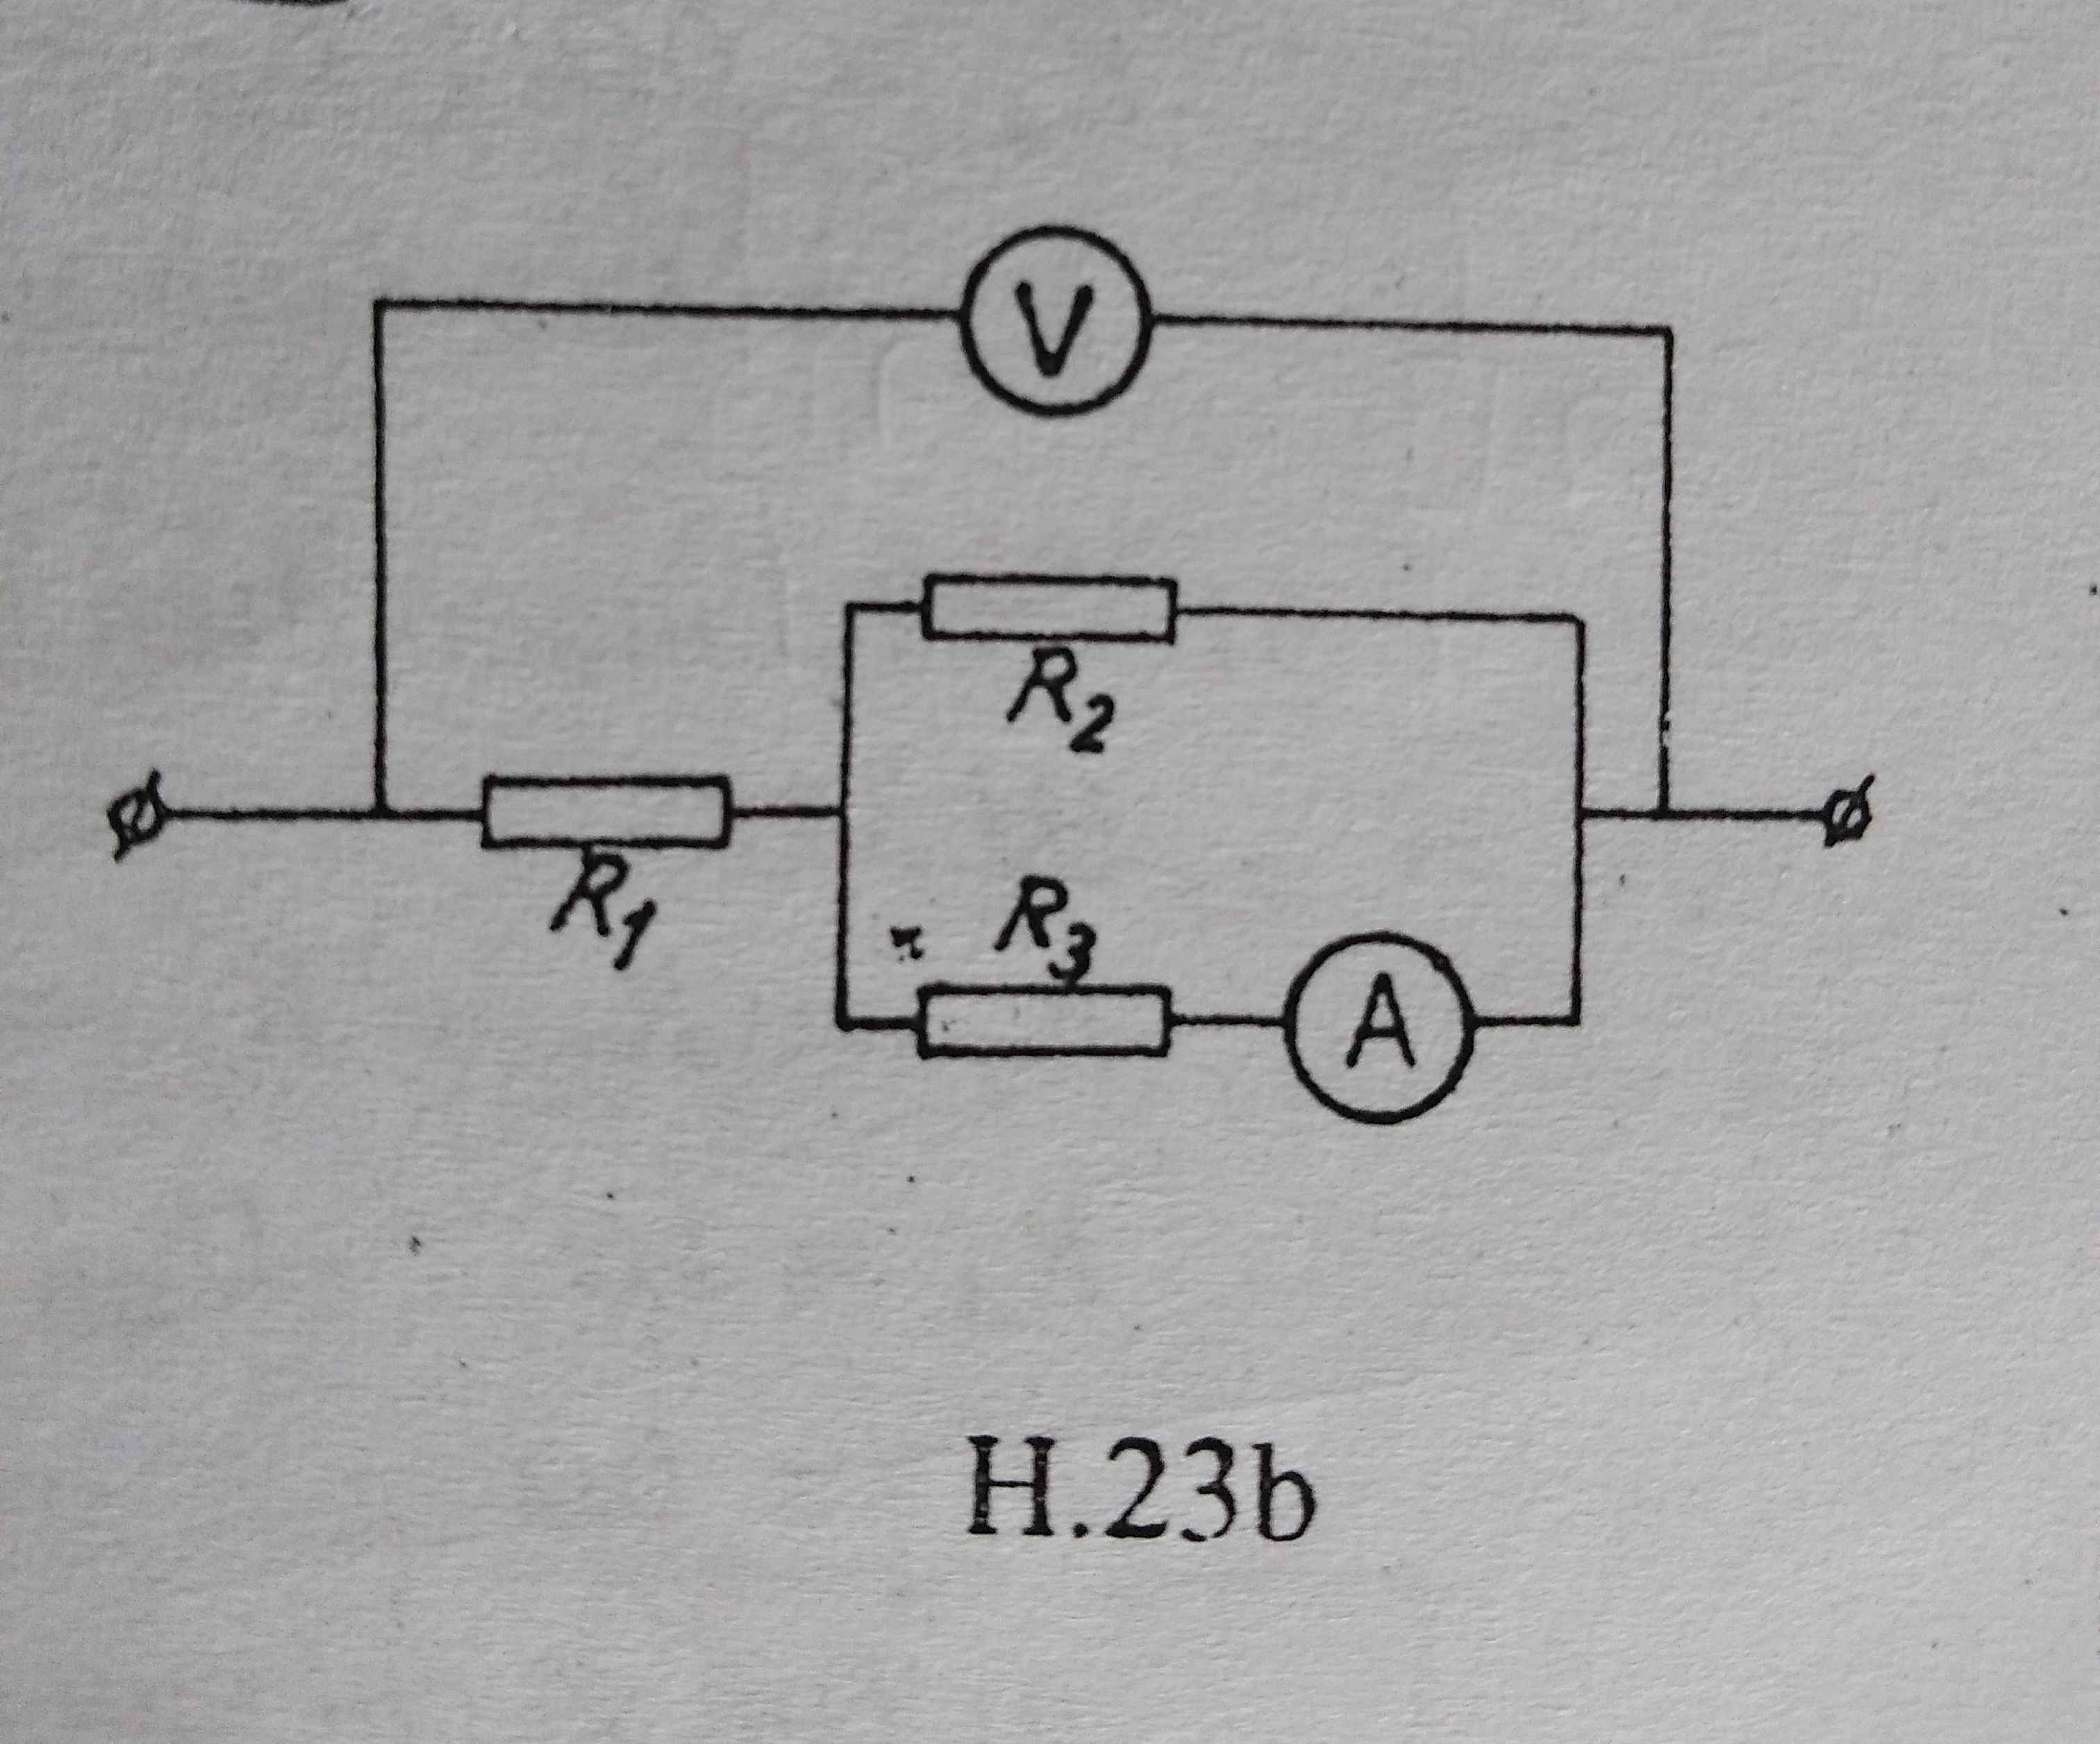 Cho mạch điện như hình vẽ. Biết R1 = 2 ôm, R2 = 6 ôm. Vôn kế chỉ 12V, ampe  kế chỉ 2A. Tính R3 - Hoc24